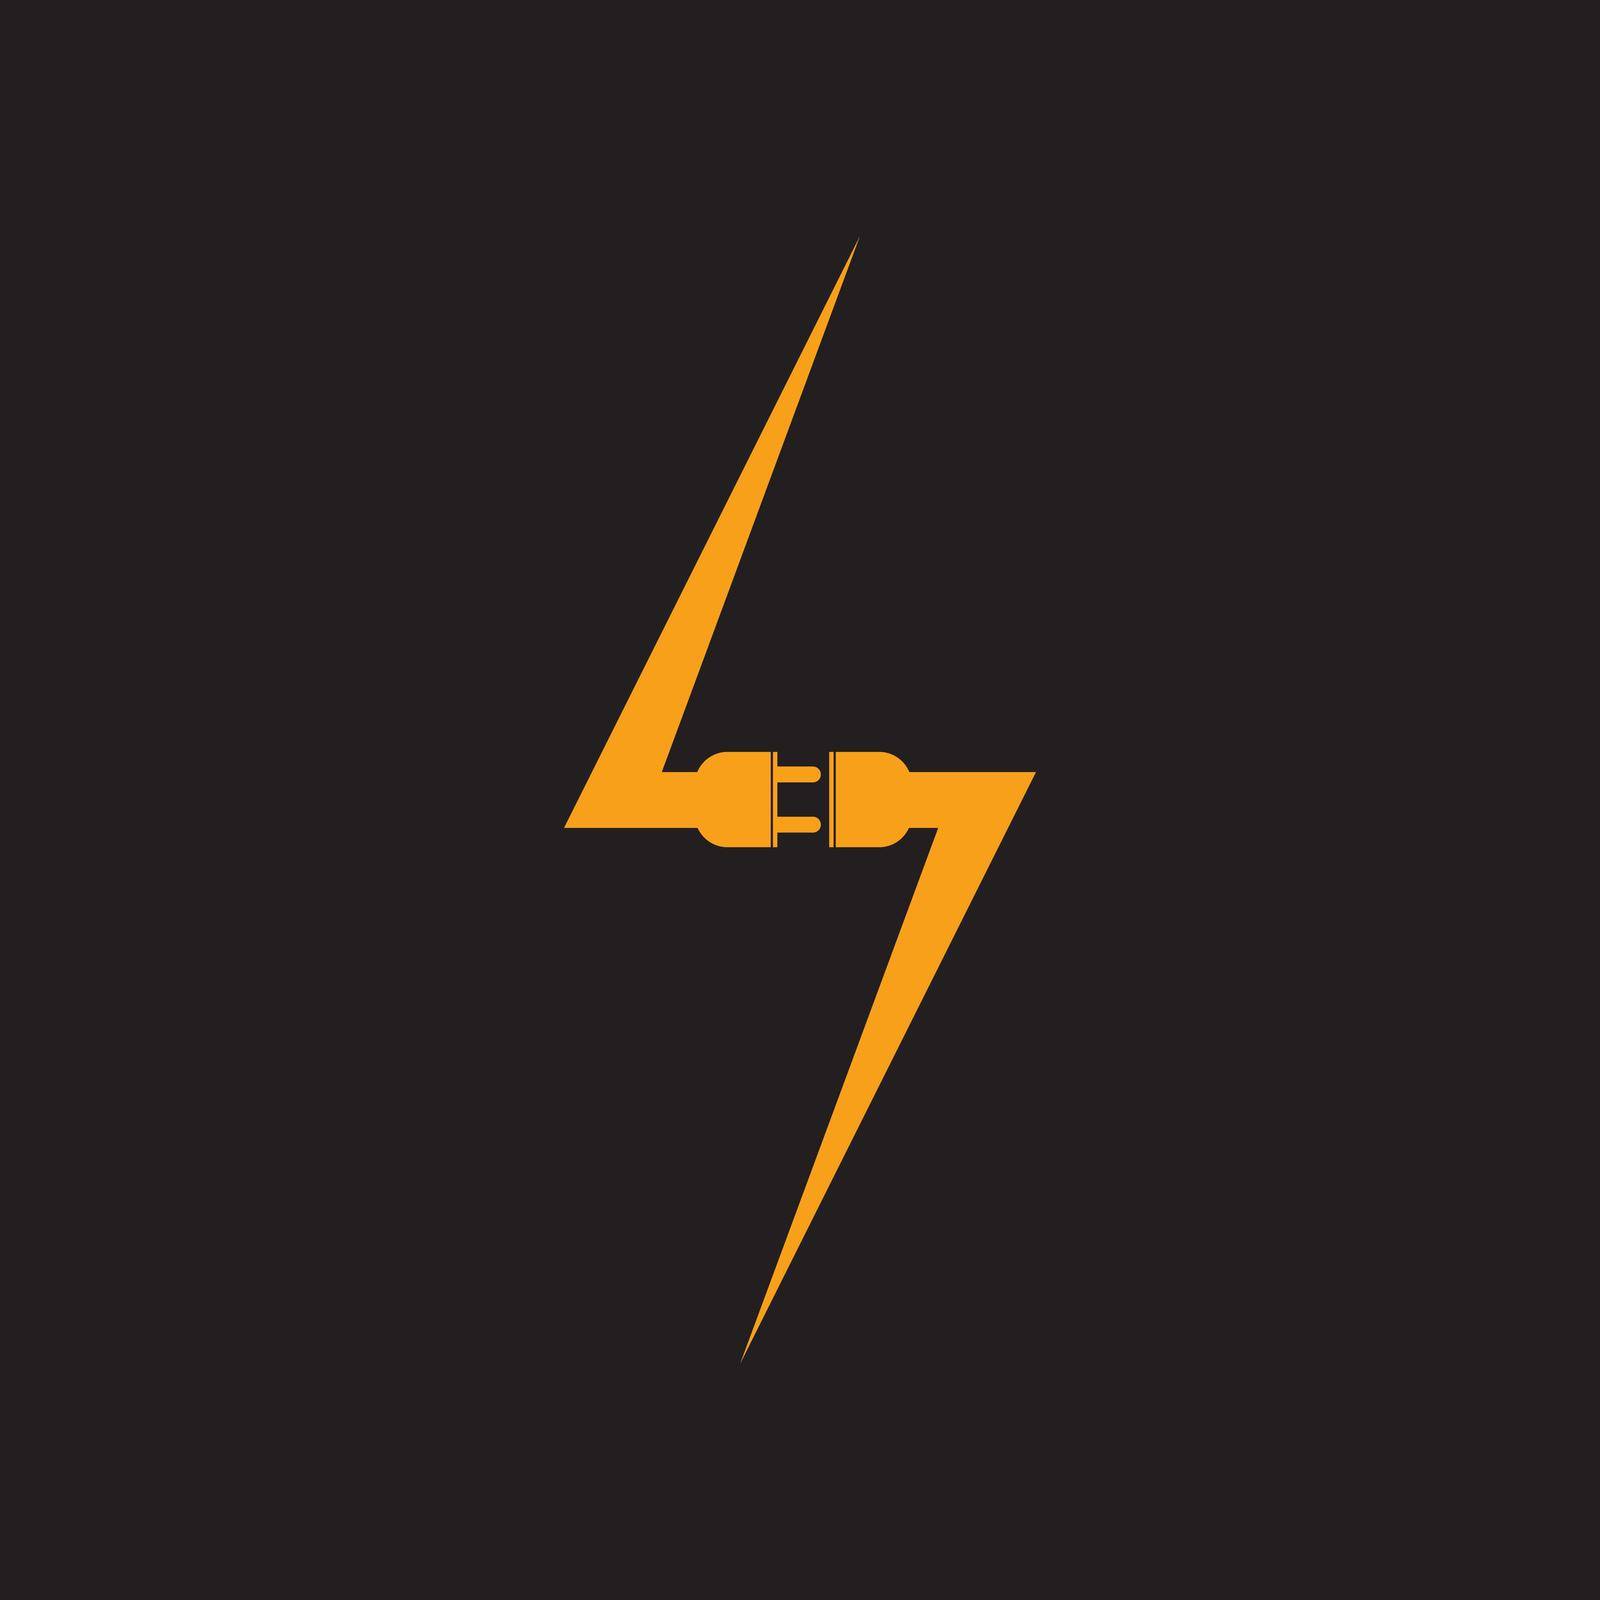 Electrical plug logo background, vector illustration template design